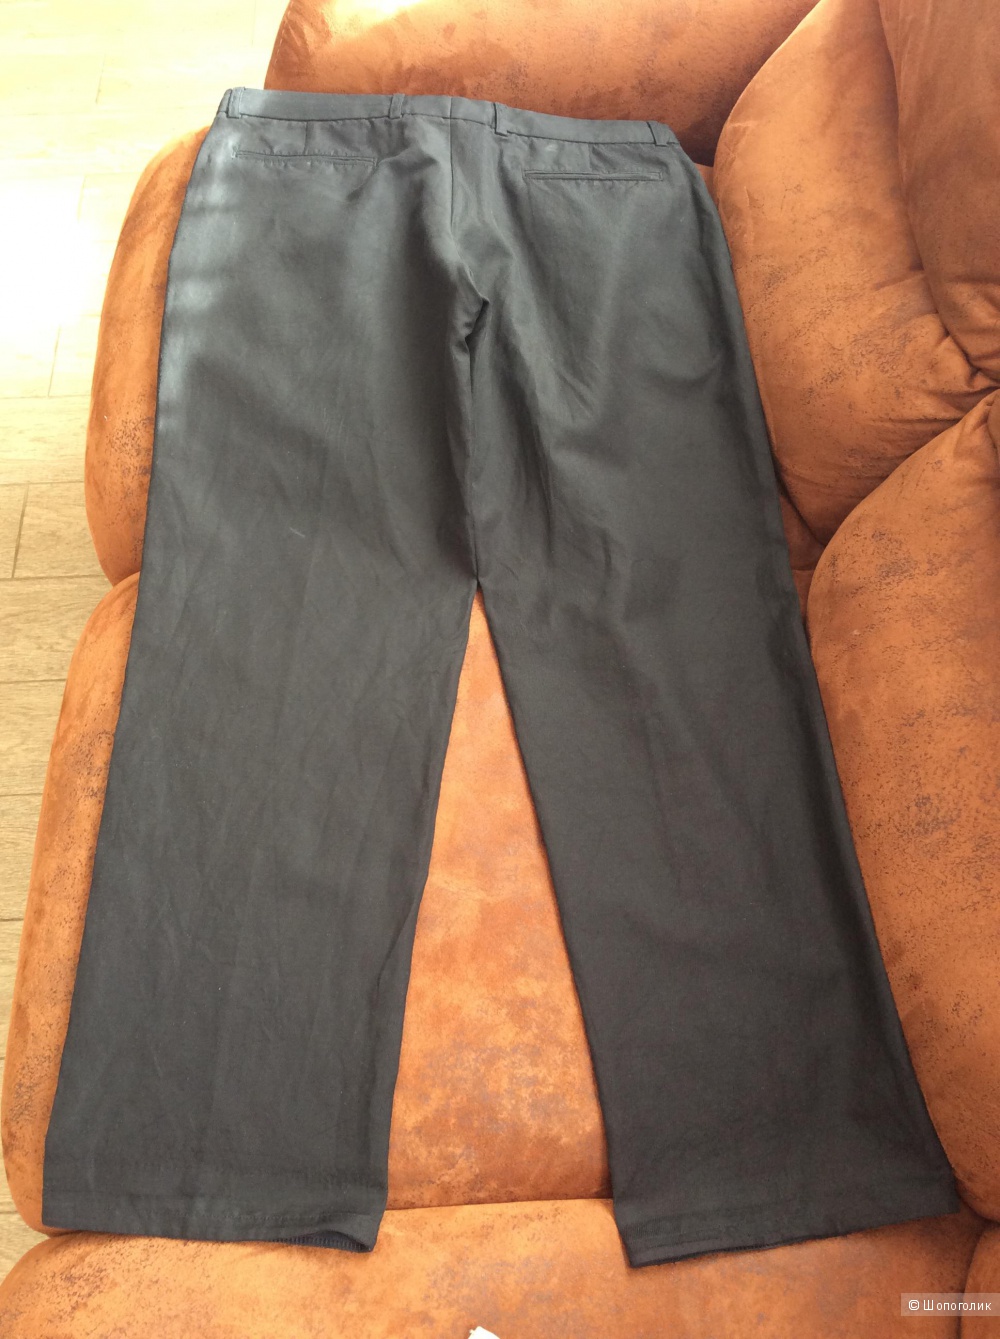 Мужские брюки Armani collezioni на р.50-52.